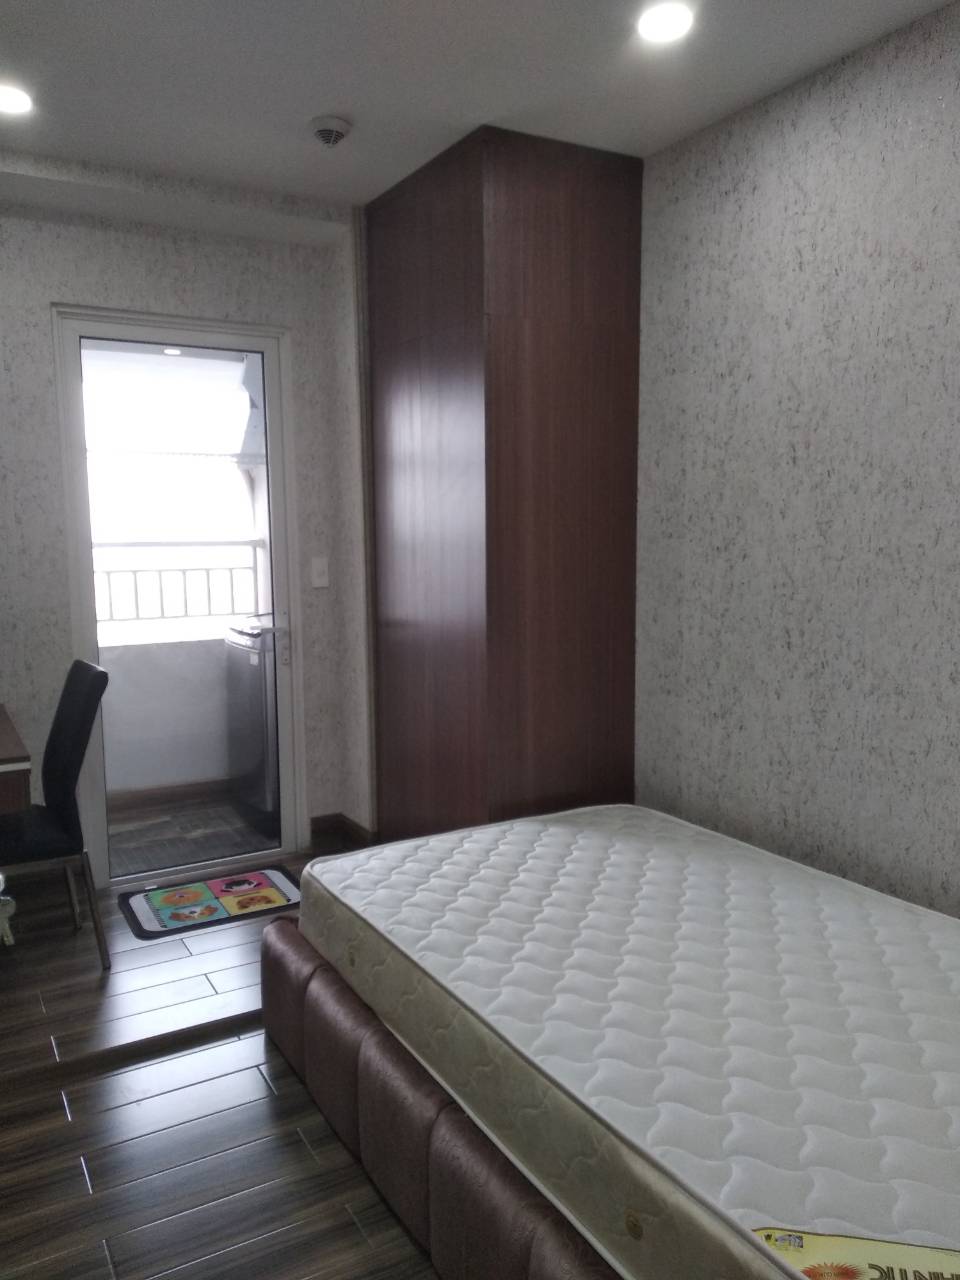 Giá rẻ cho thuê gấp căn hộ cao cấp Sài Gòn Royal - Bến Vân Đồn 2 phòng ngủ Quận 4